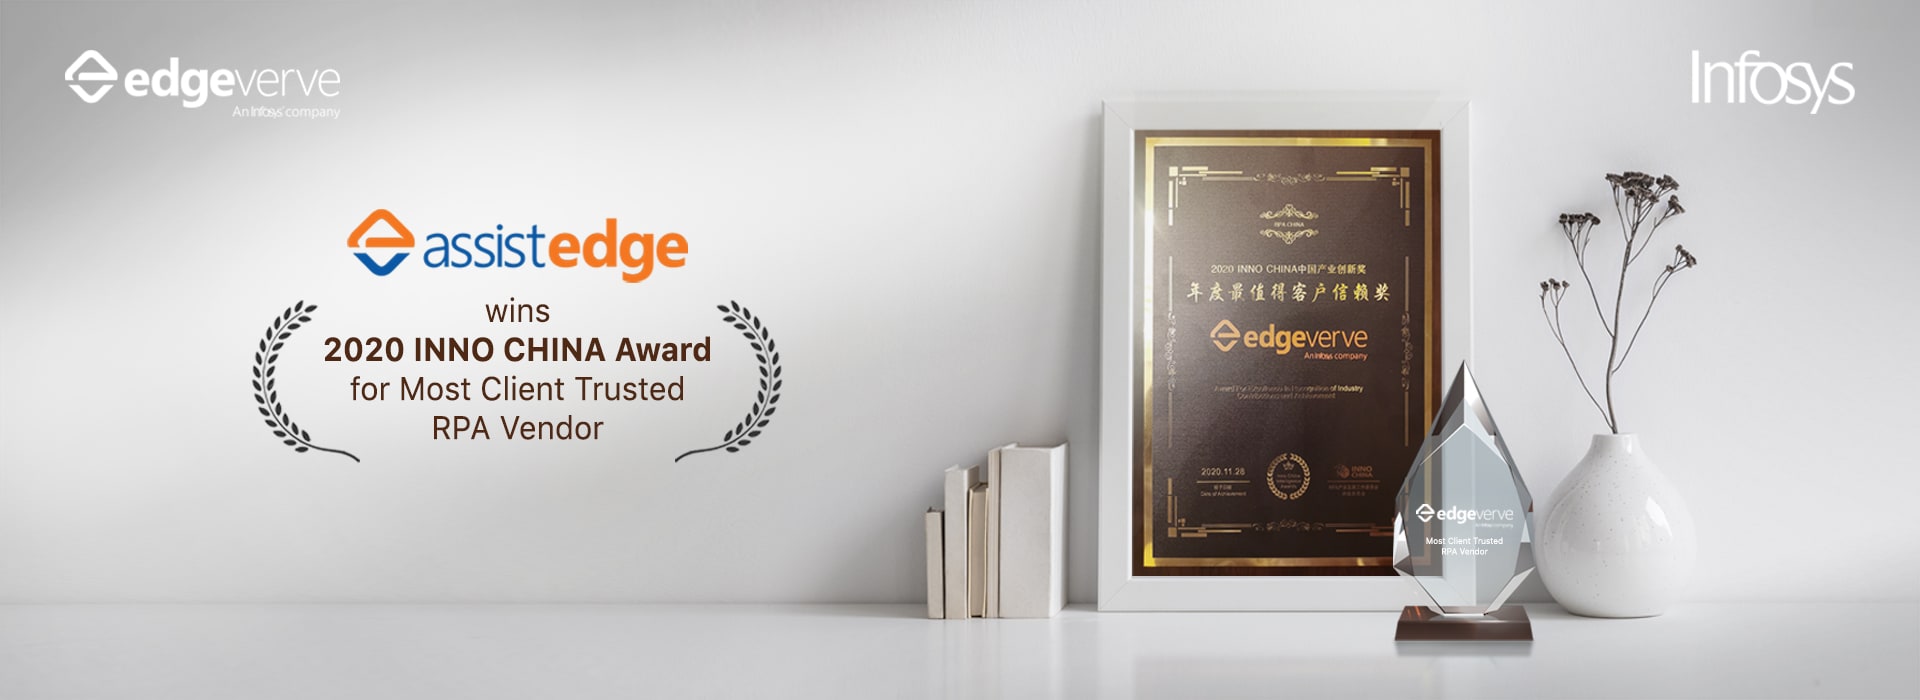 AssistEdge-China-Summer-Award-bgs